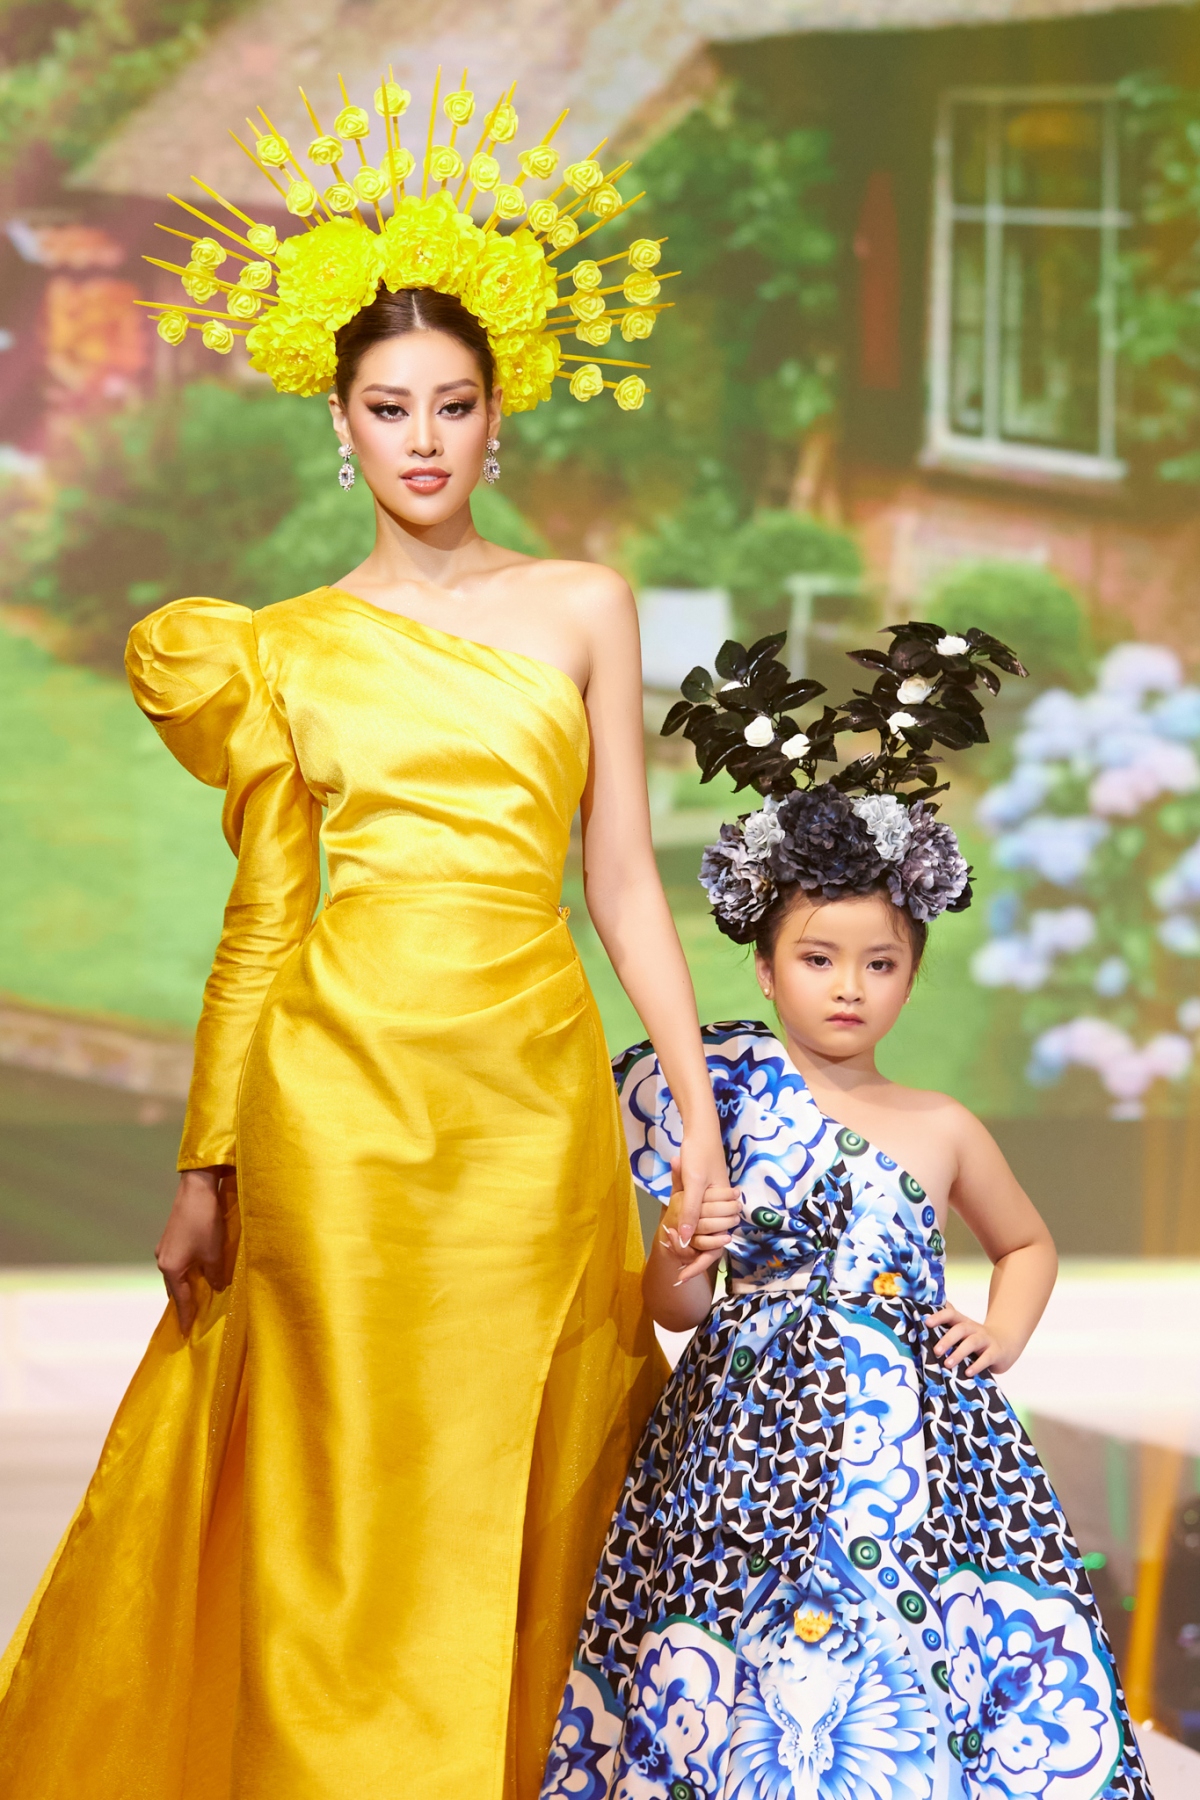 Sang phần trình diễn thứ hai, Hoa hậu Khánh Vân diện nguyên bộ đầm màu vàng rực, cùng mũ to đính hoa giúp tôn vinh vóc dáng và chiều cao nổi bật của đương kim Hoa hậu Hoàn vũ Việt Nam.